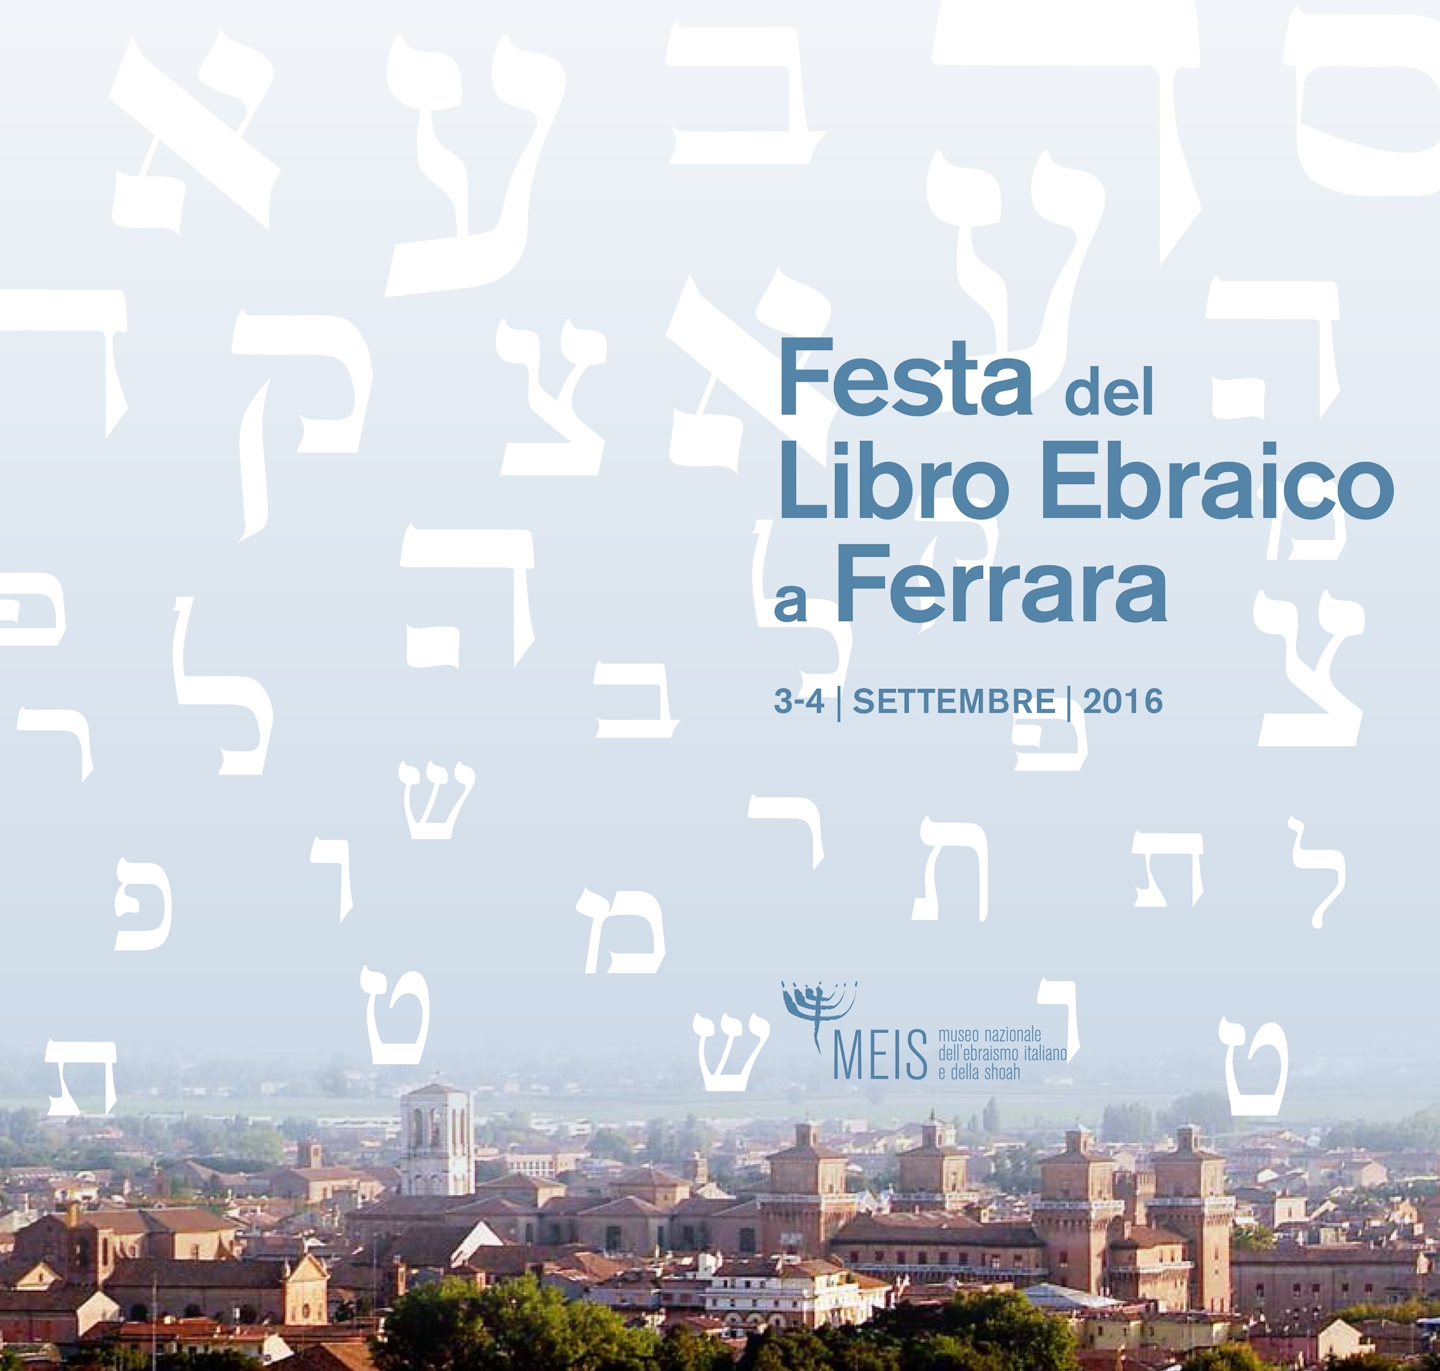 Festa del Libro Ebraico a Ferrara